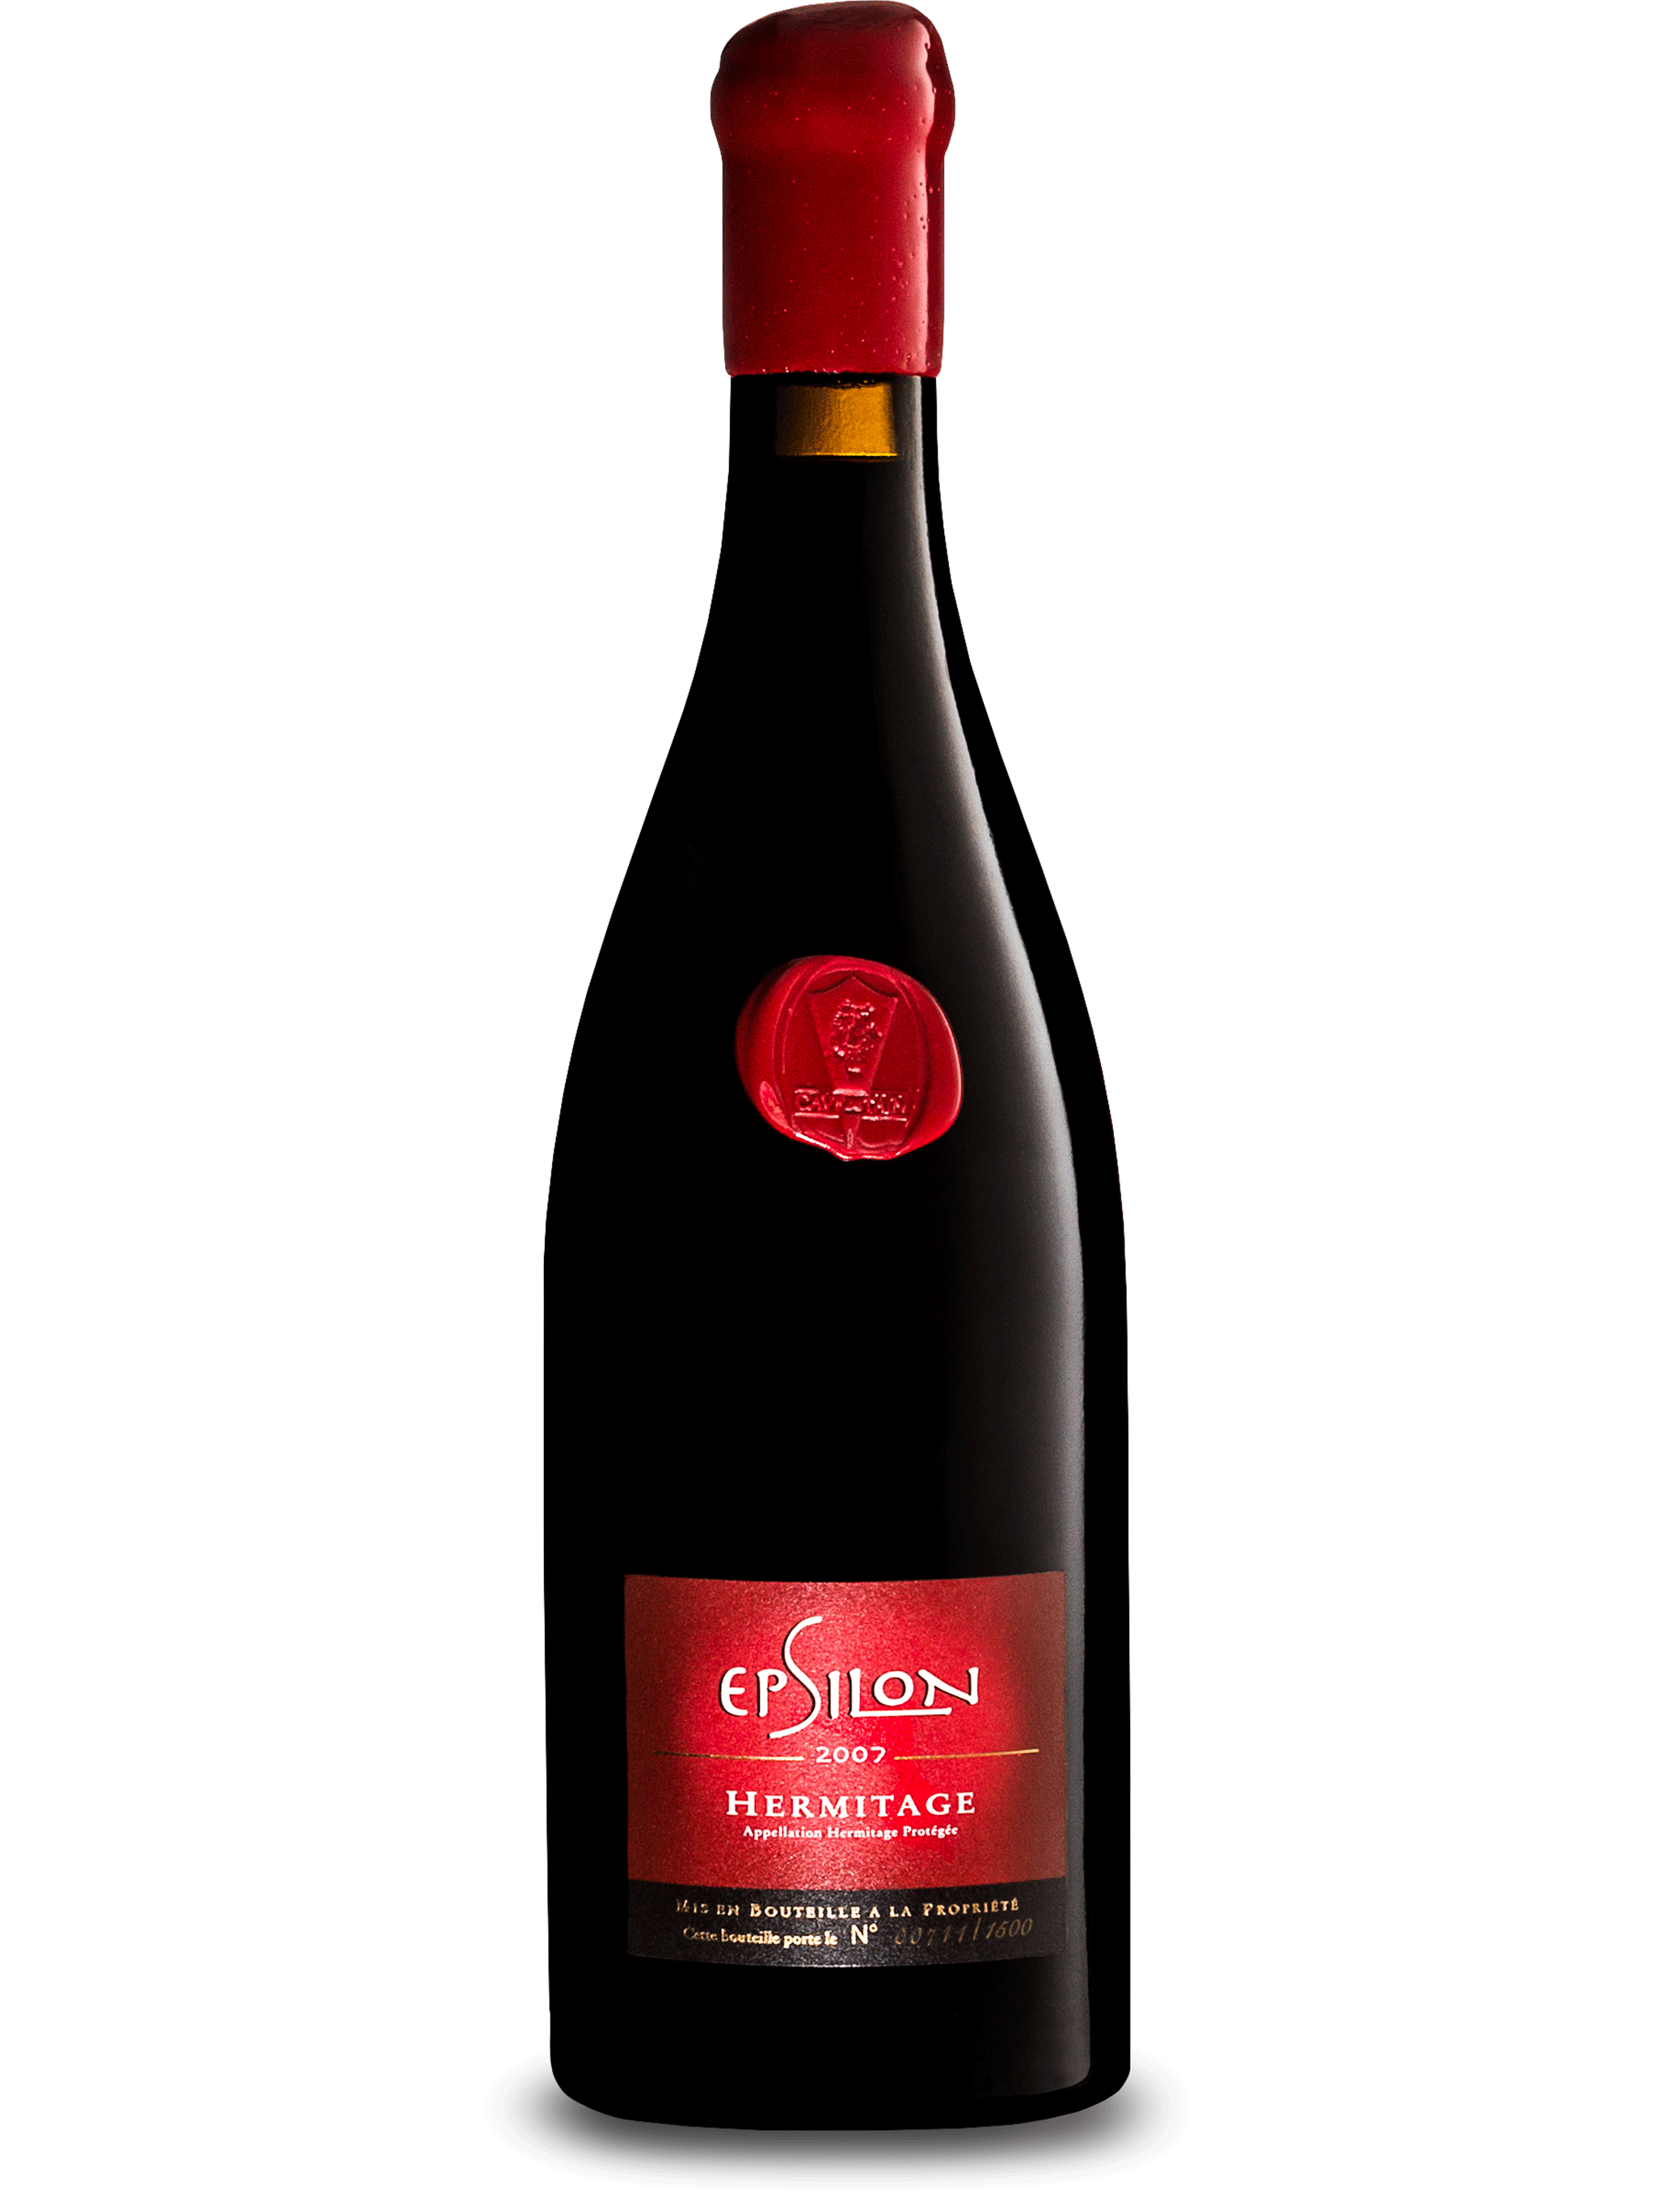 爱普希隆艾米达基红葡萄酒 2007